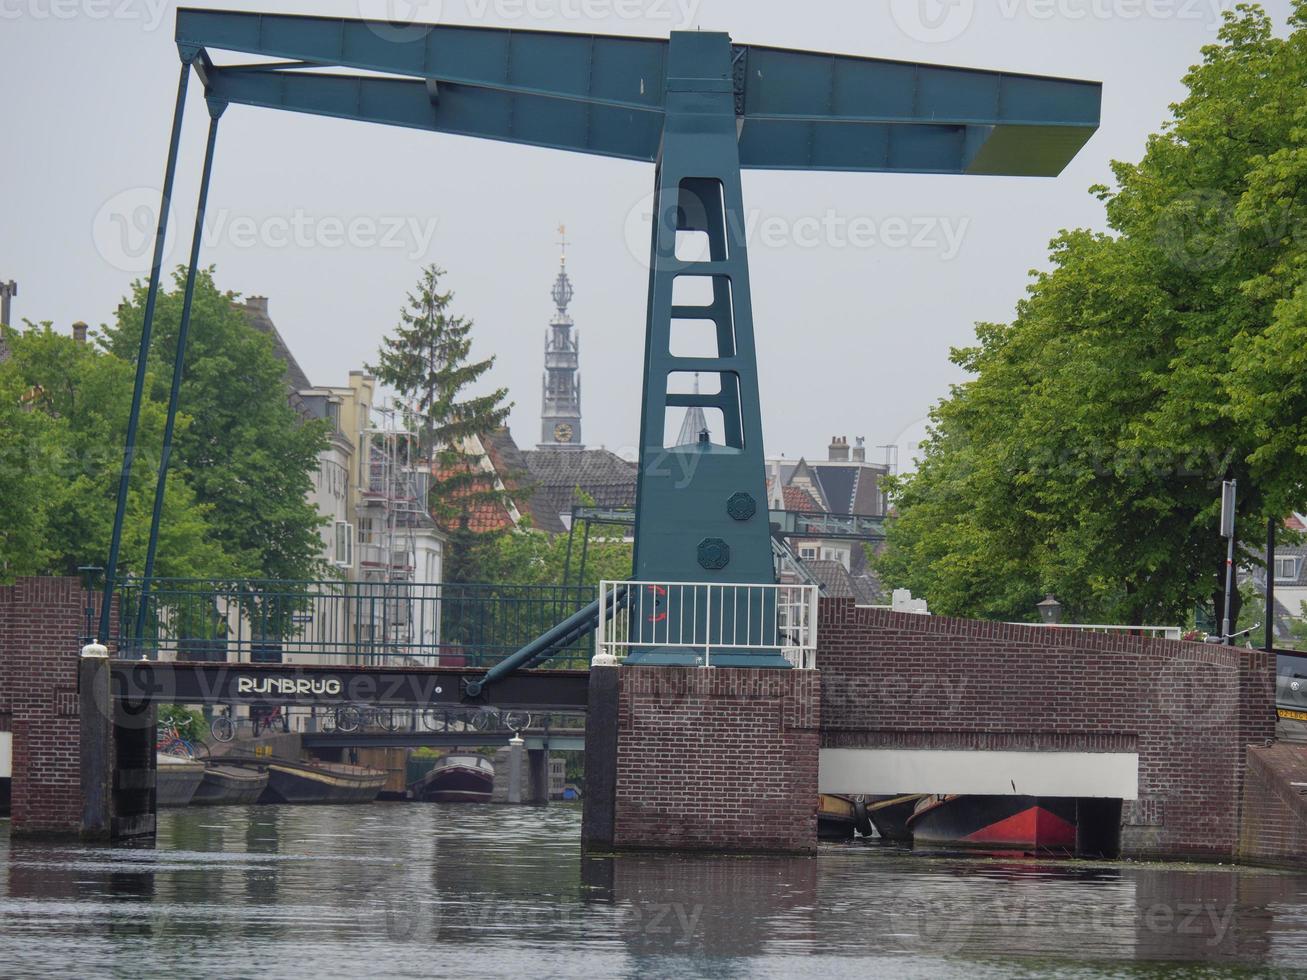 leiden stad i nederländerna foto